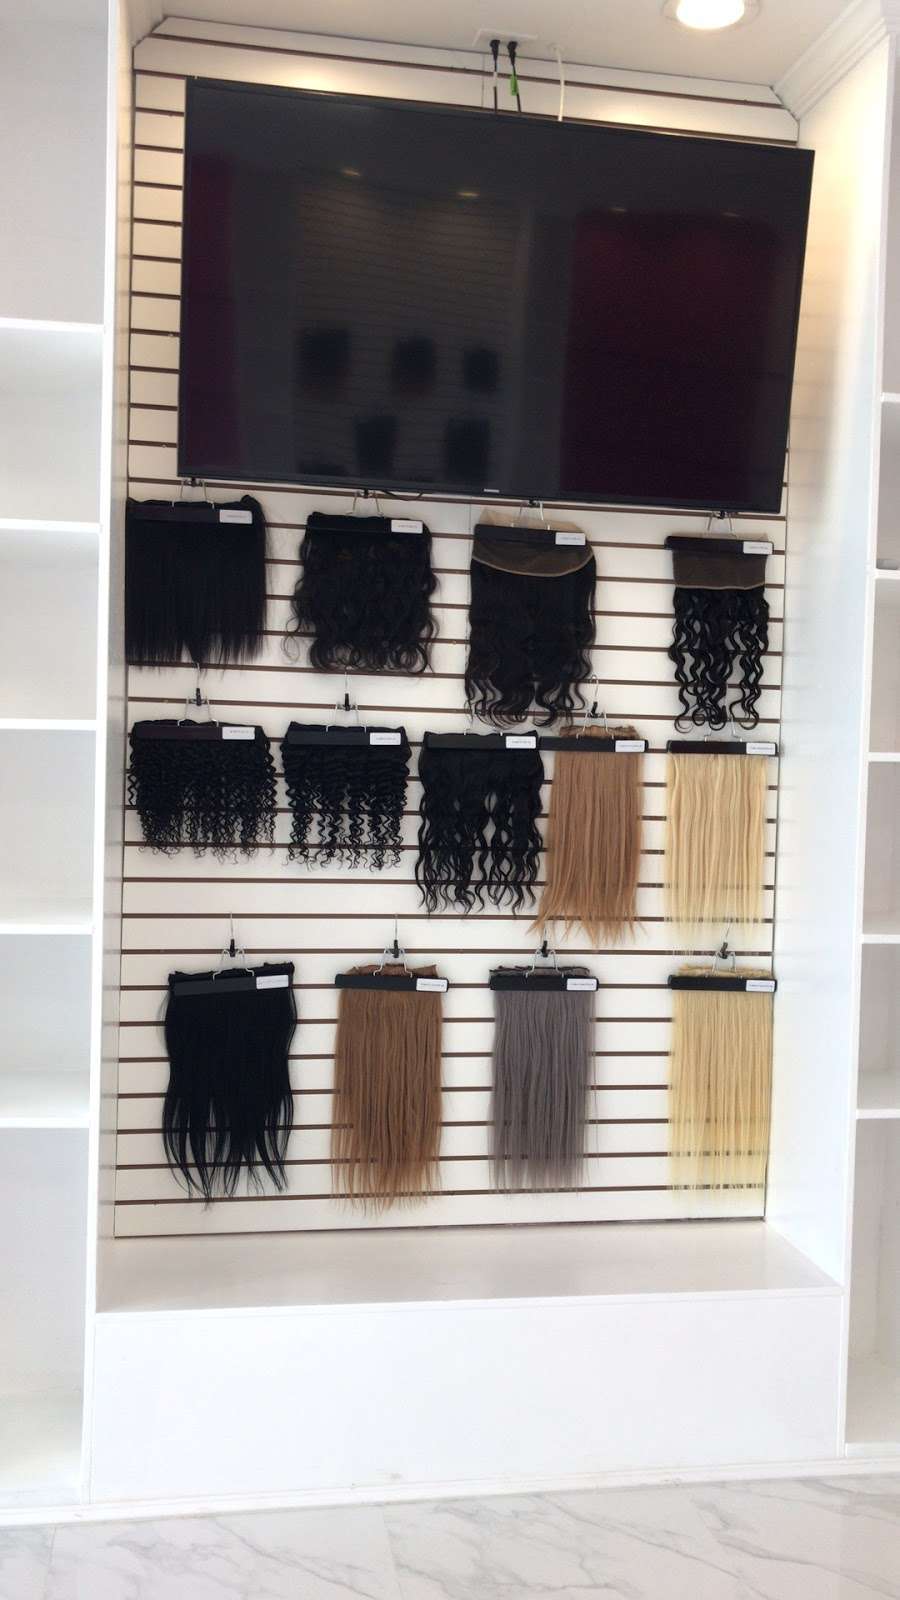 UNice Hair | 20220 S Avalon Blvd # A, Carson, CA 90746, USA | Phone: (310) 838-3454